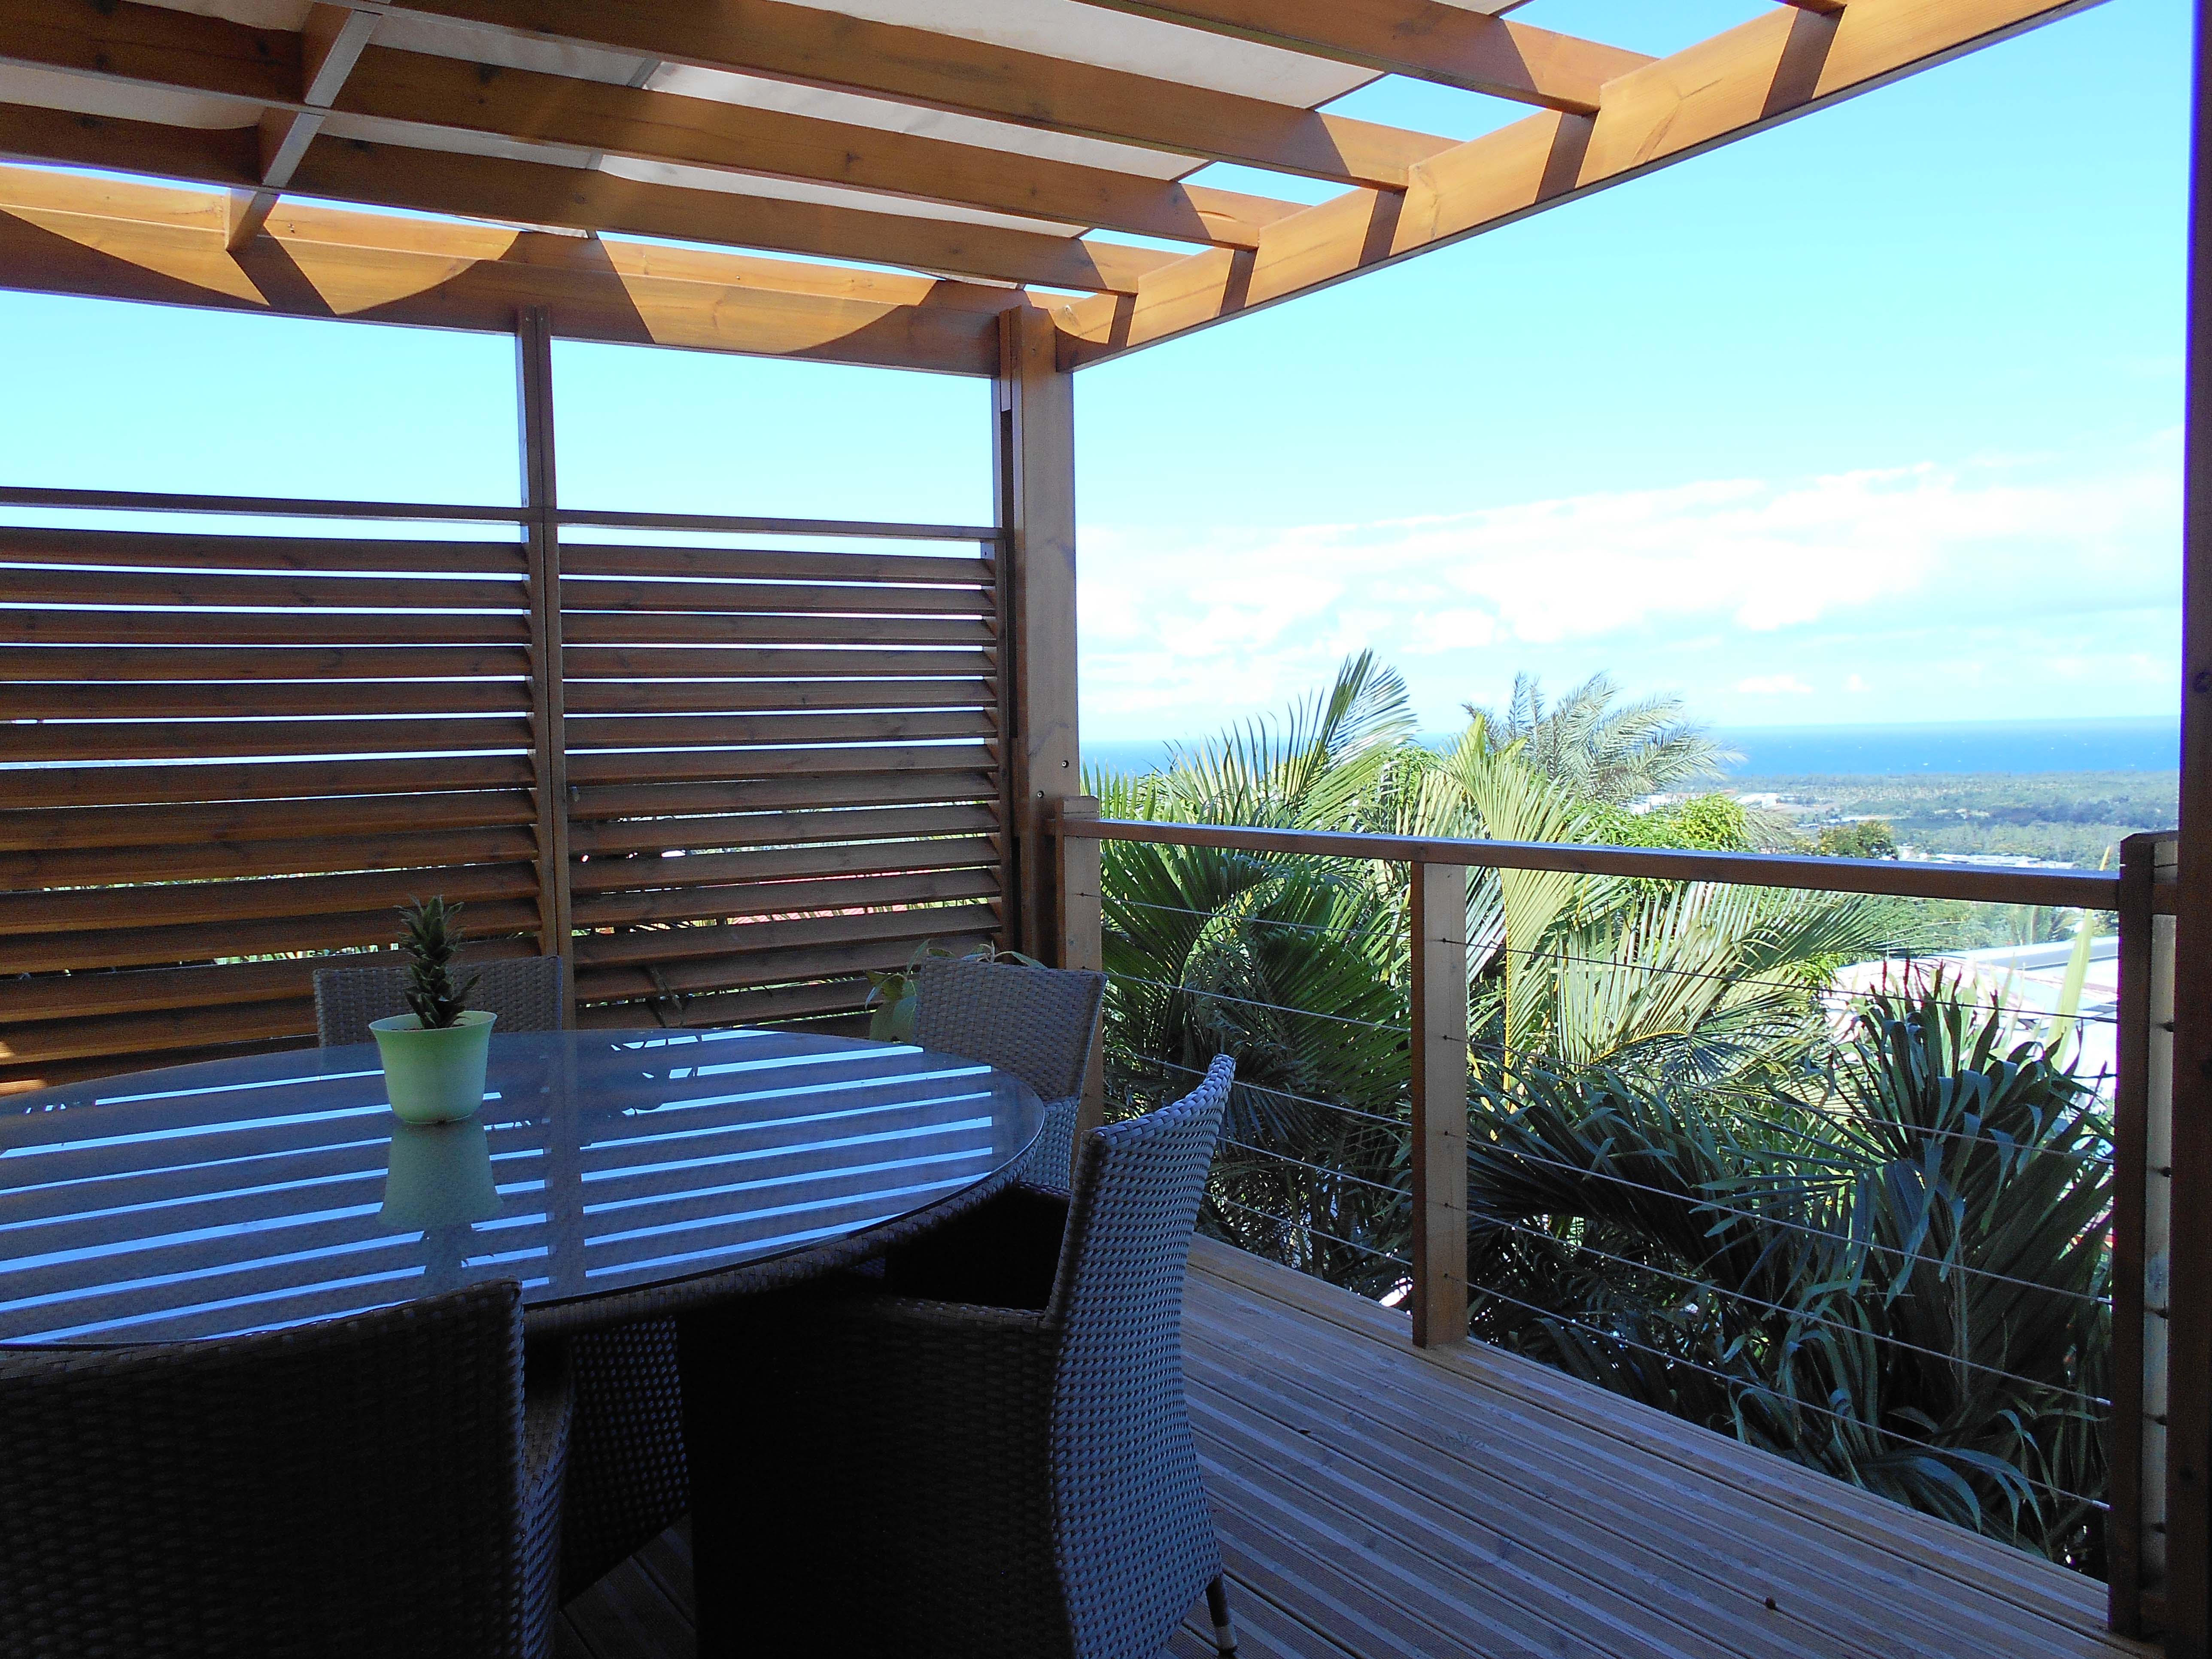 Une terrasse sous varangue vous offre la vue sur mer.Espace privilégié pour partager tous les moments de détente.